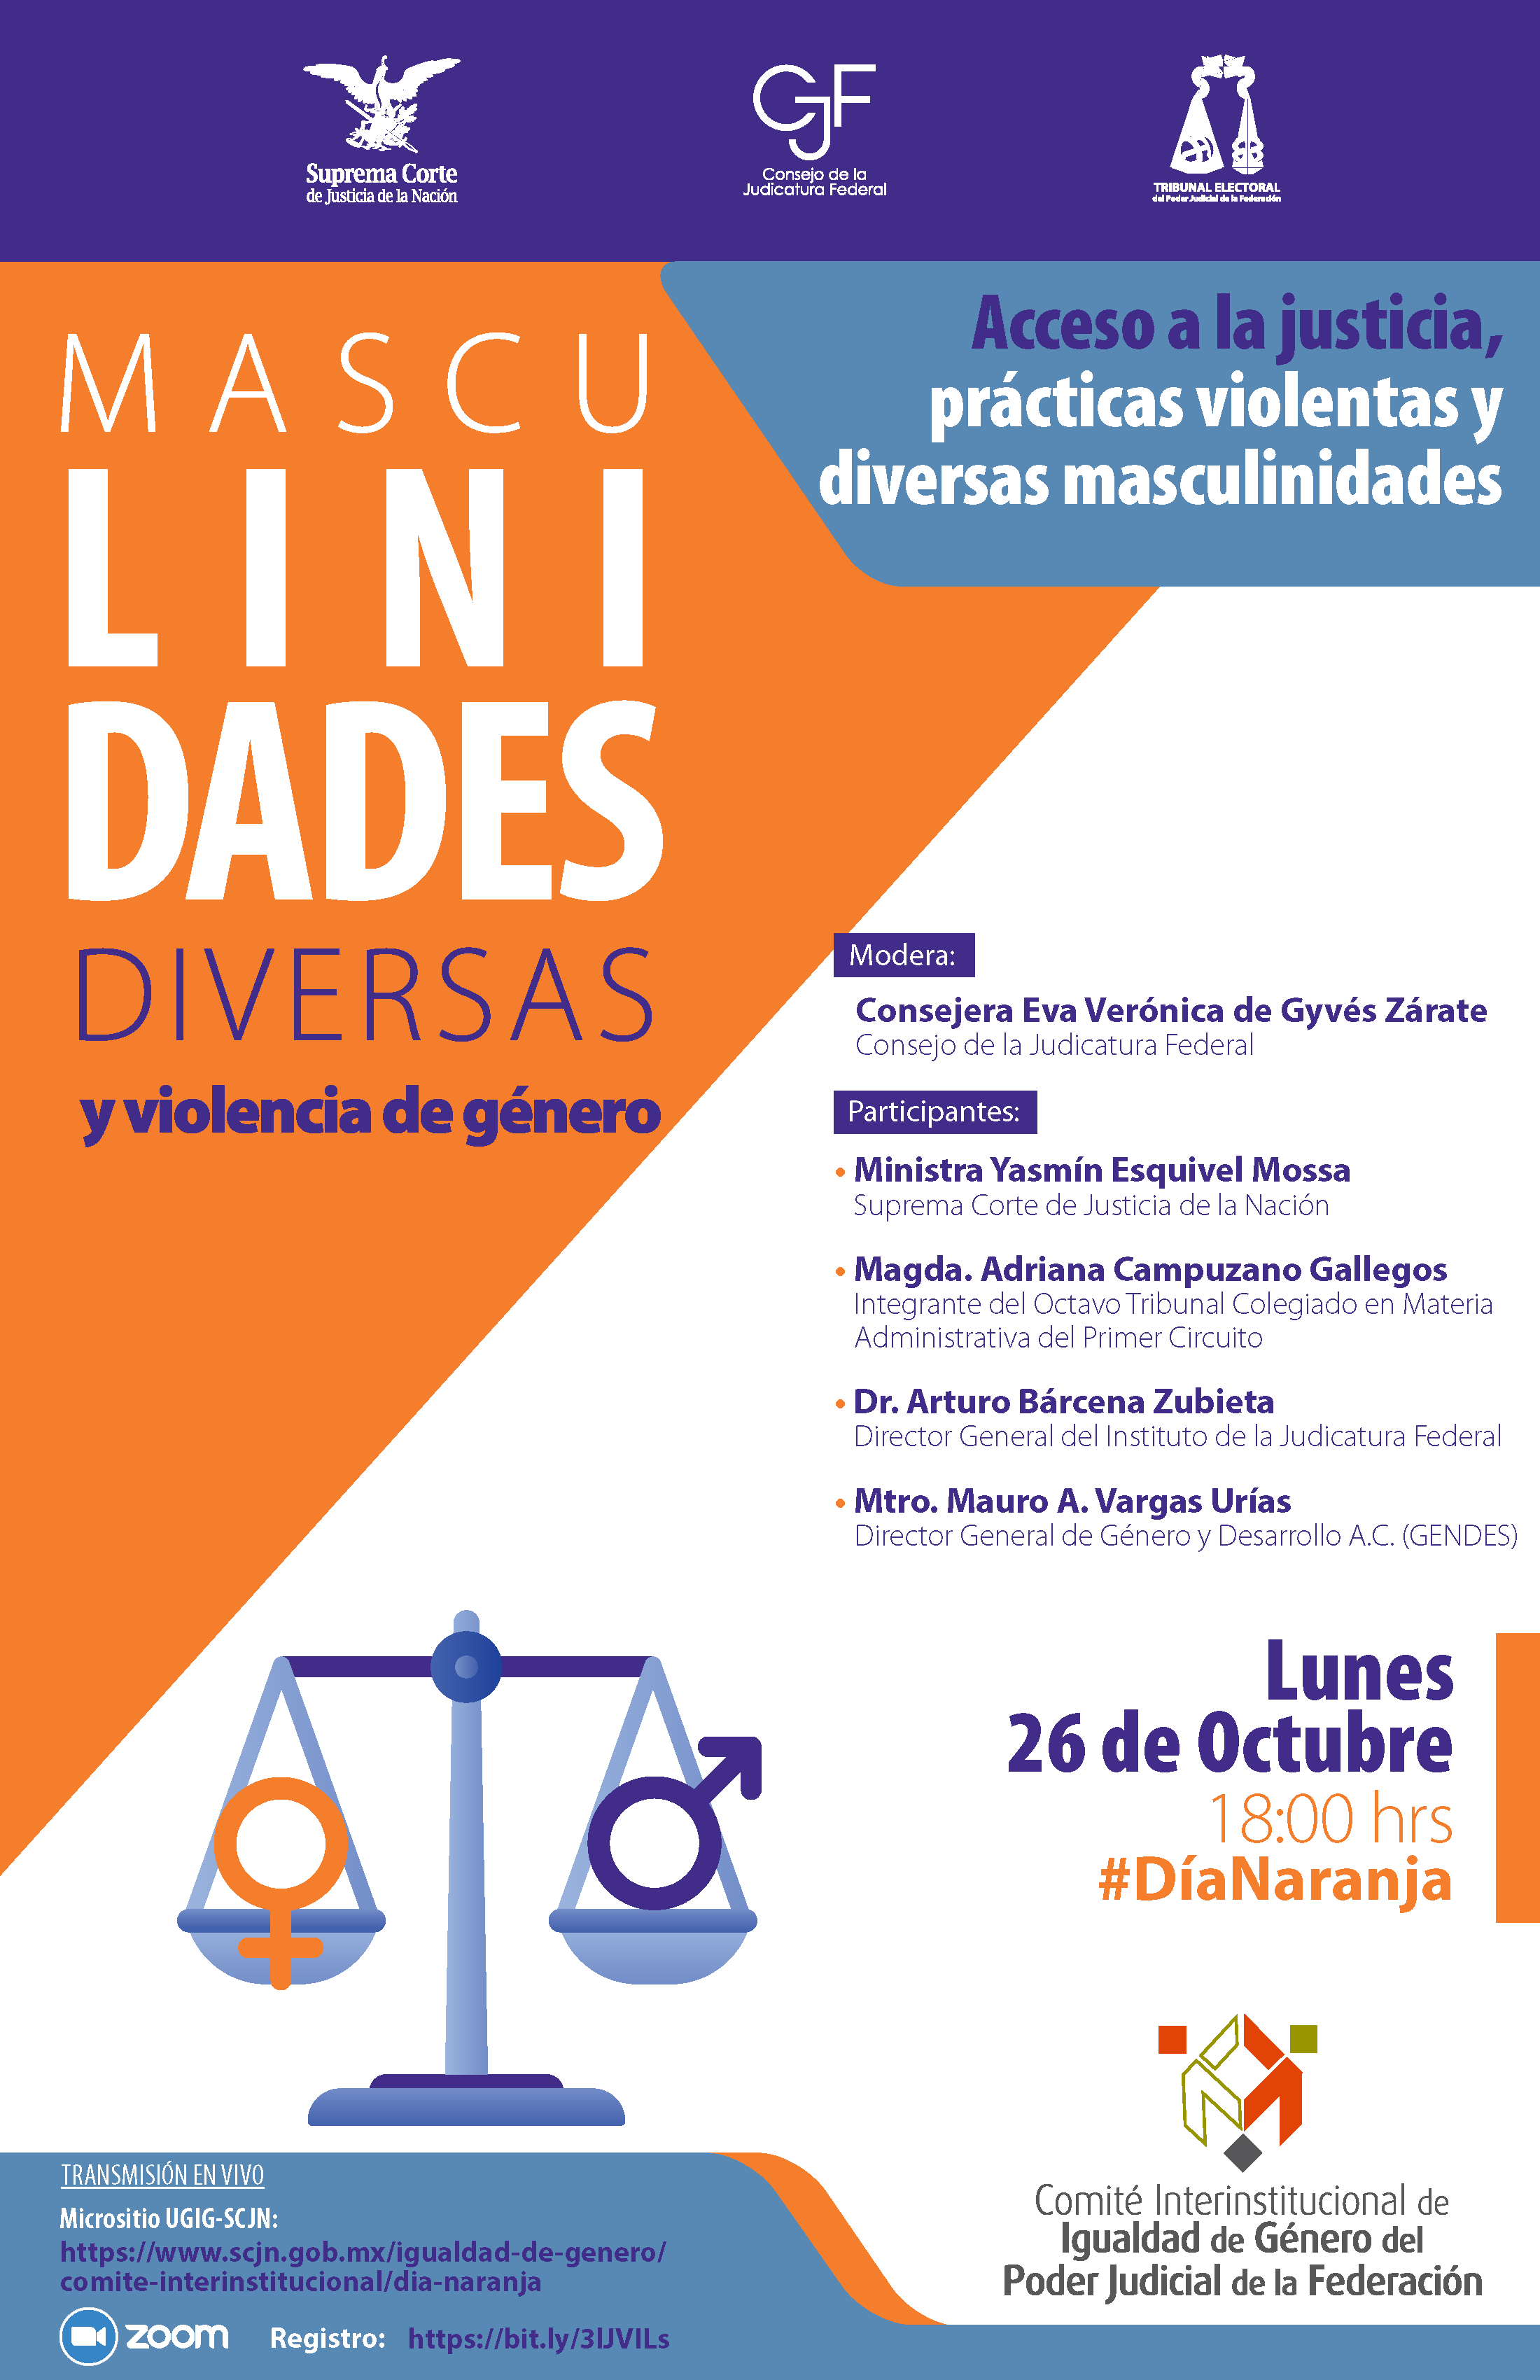 Cartel del evento, Debates sobre Violencia de Género en el acceso a la Justicia #DíaNaranja